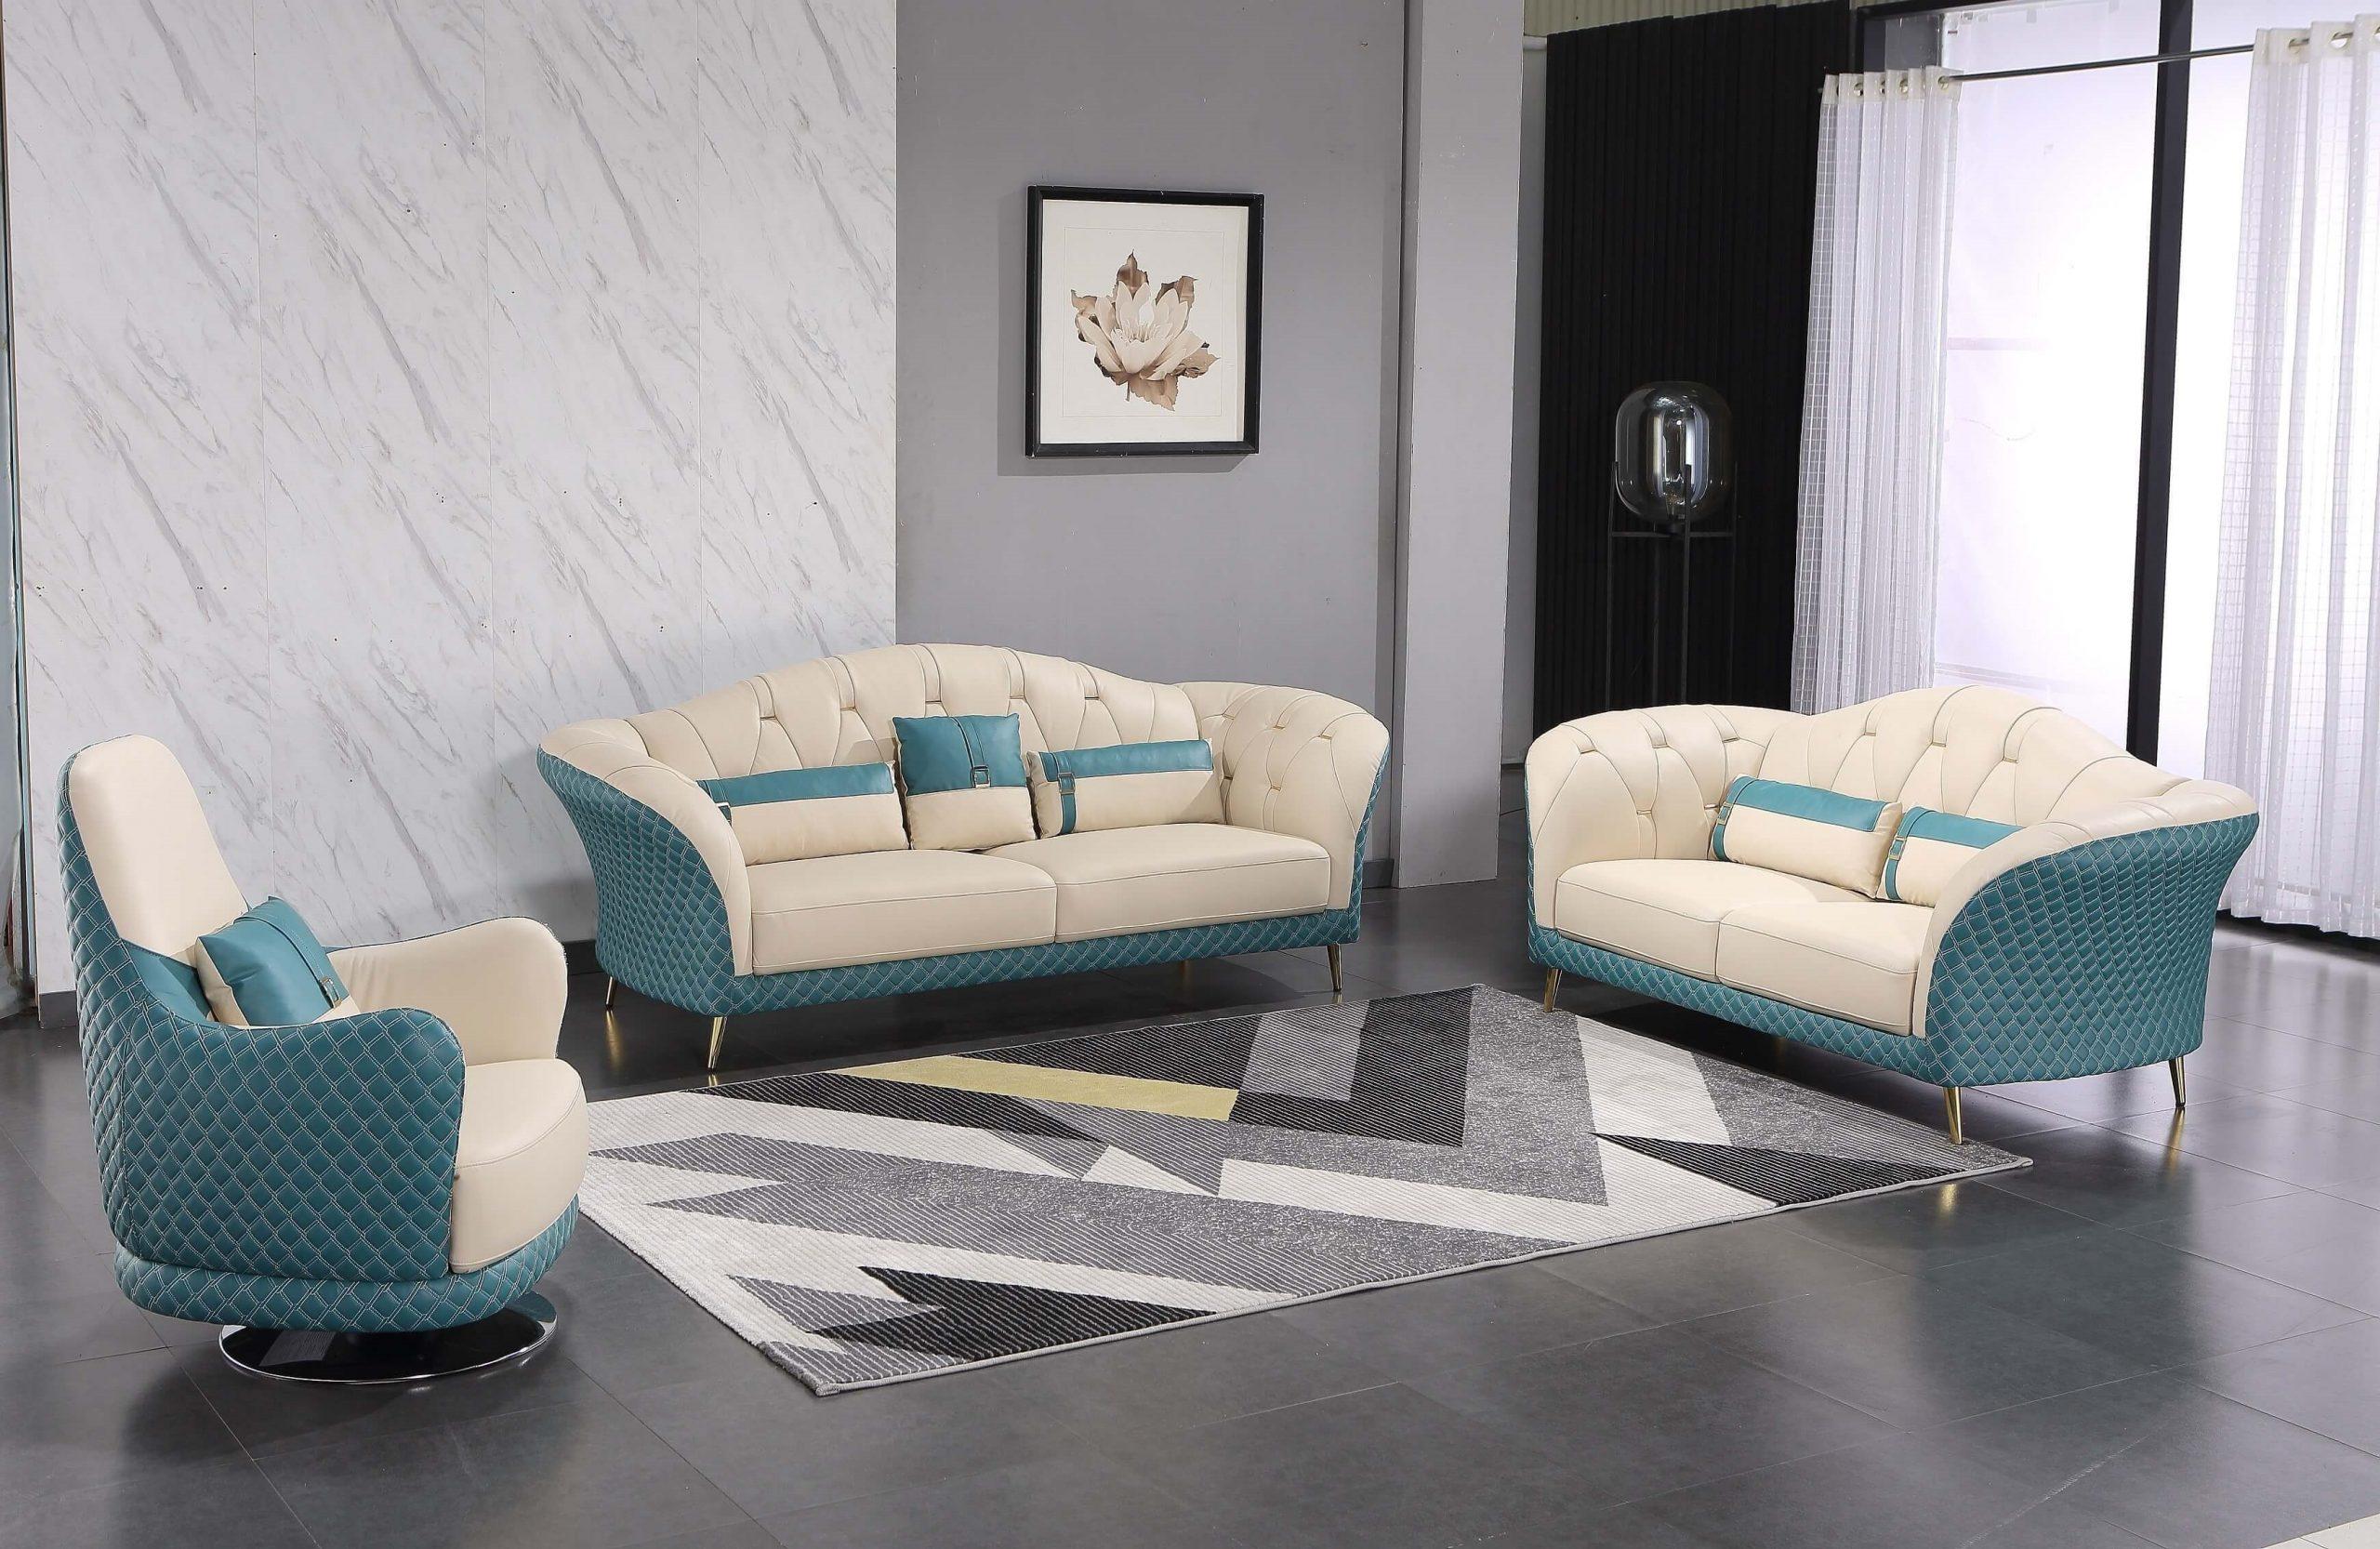 

                    
EUROPEAN FURNITURE AMALIA Sofa Off-White/Blue Italian Leather Purchase 
